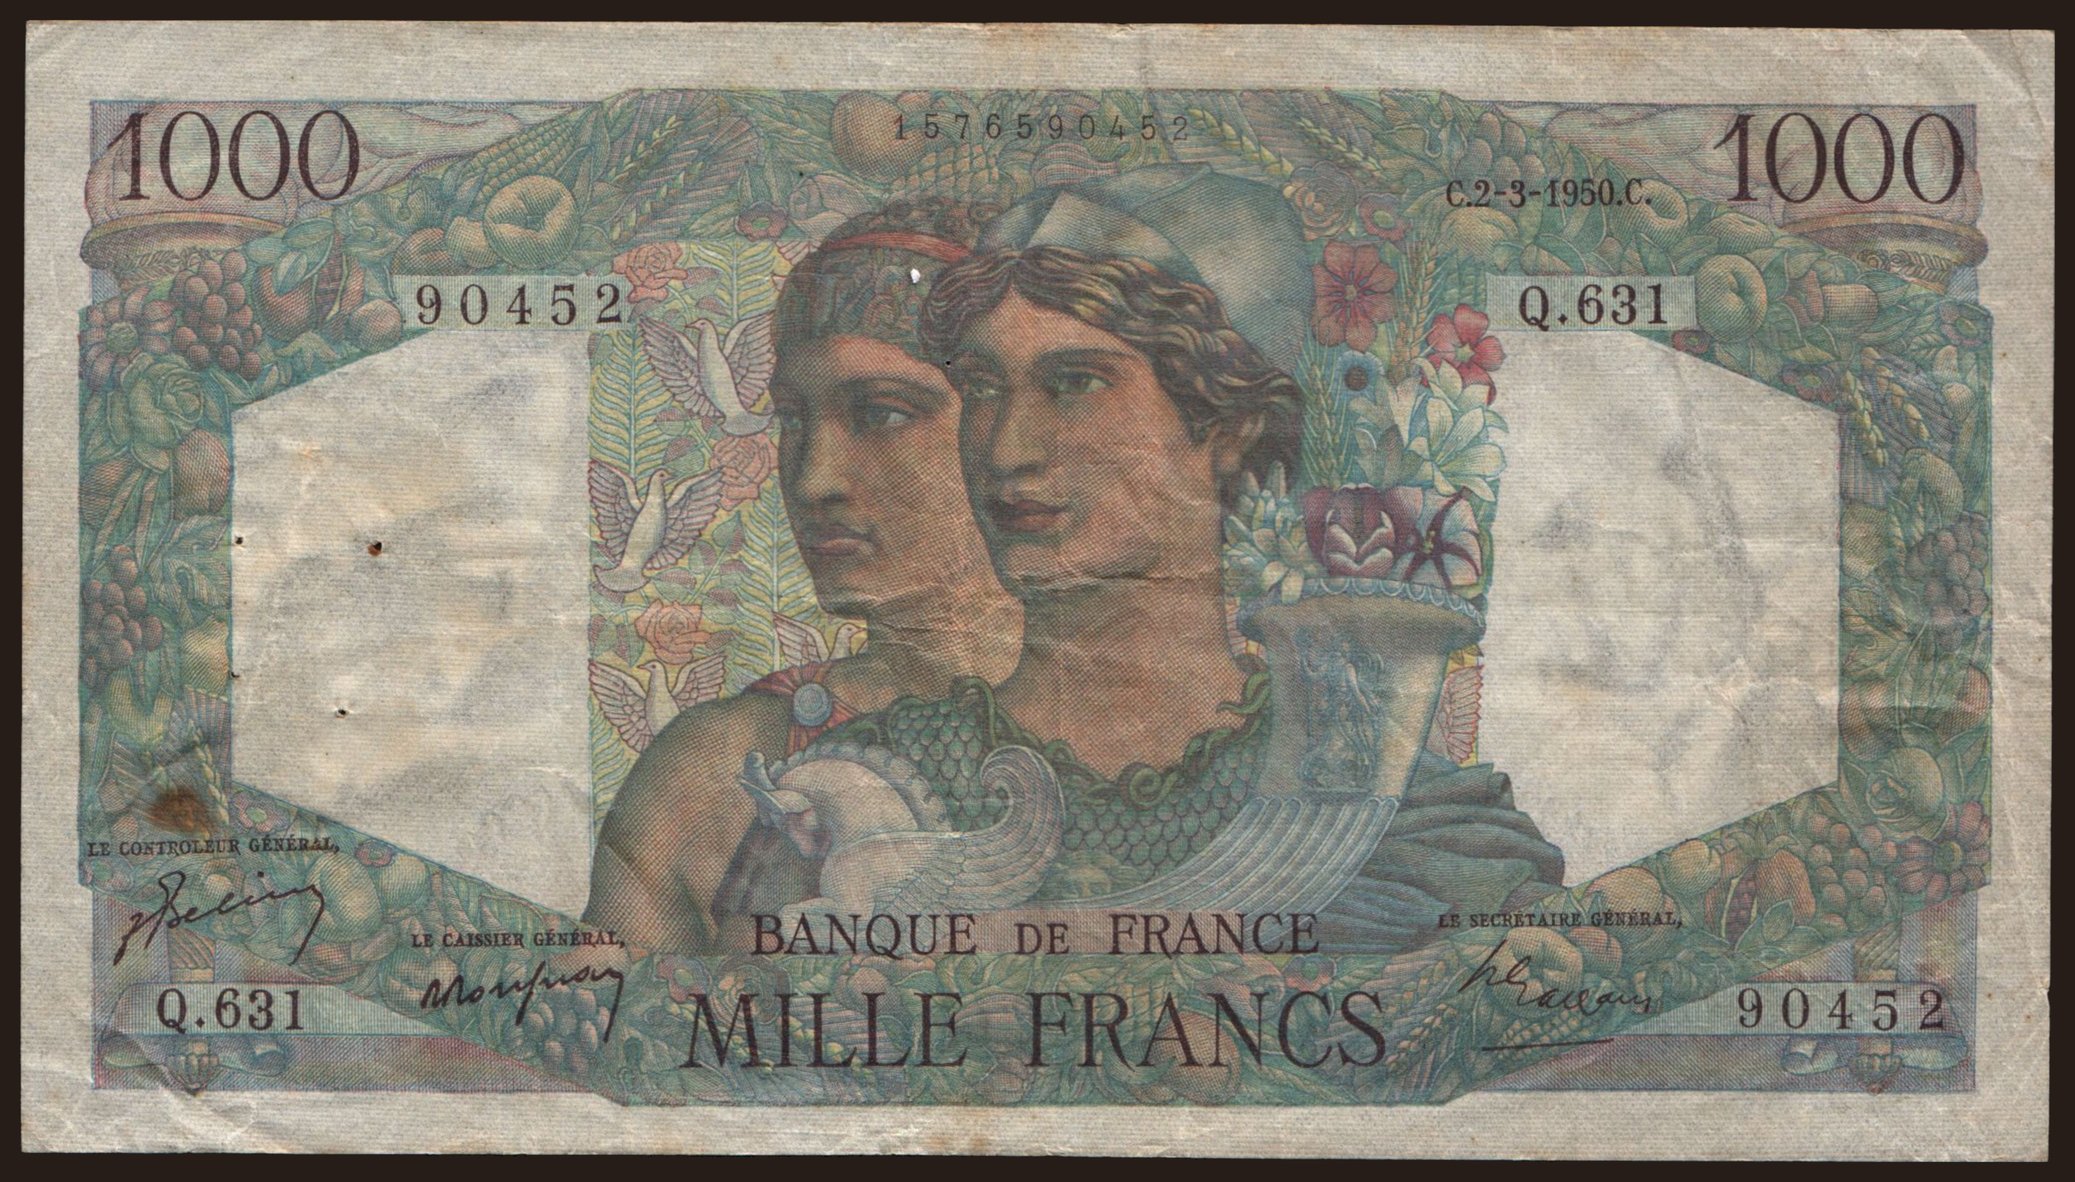 1000 francs, 1950